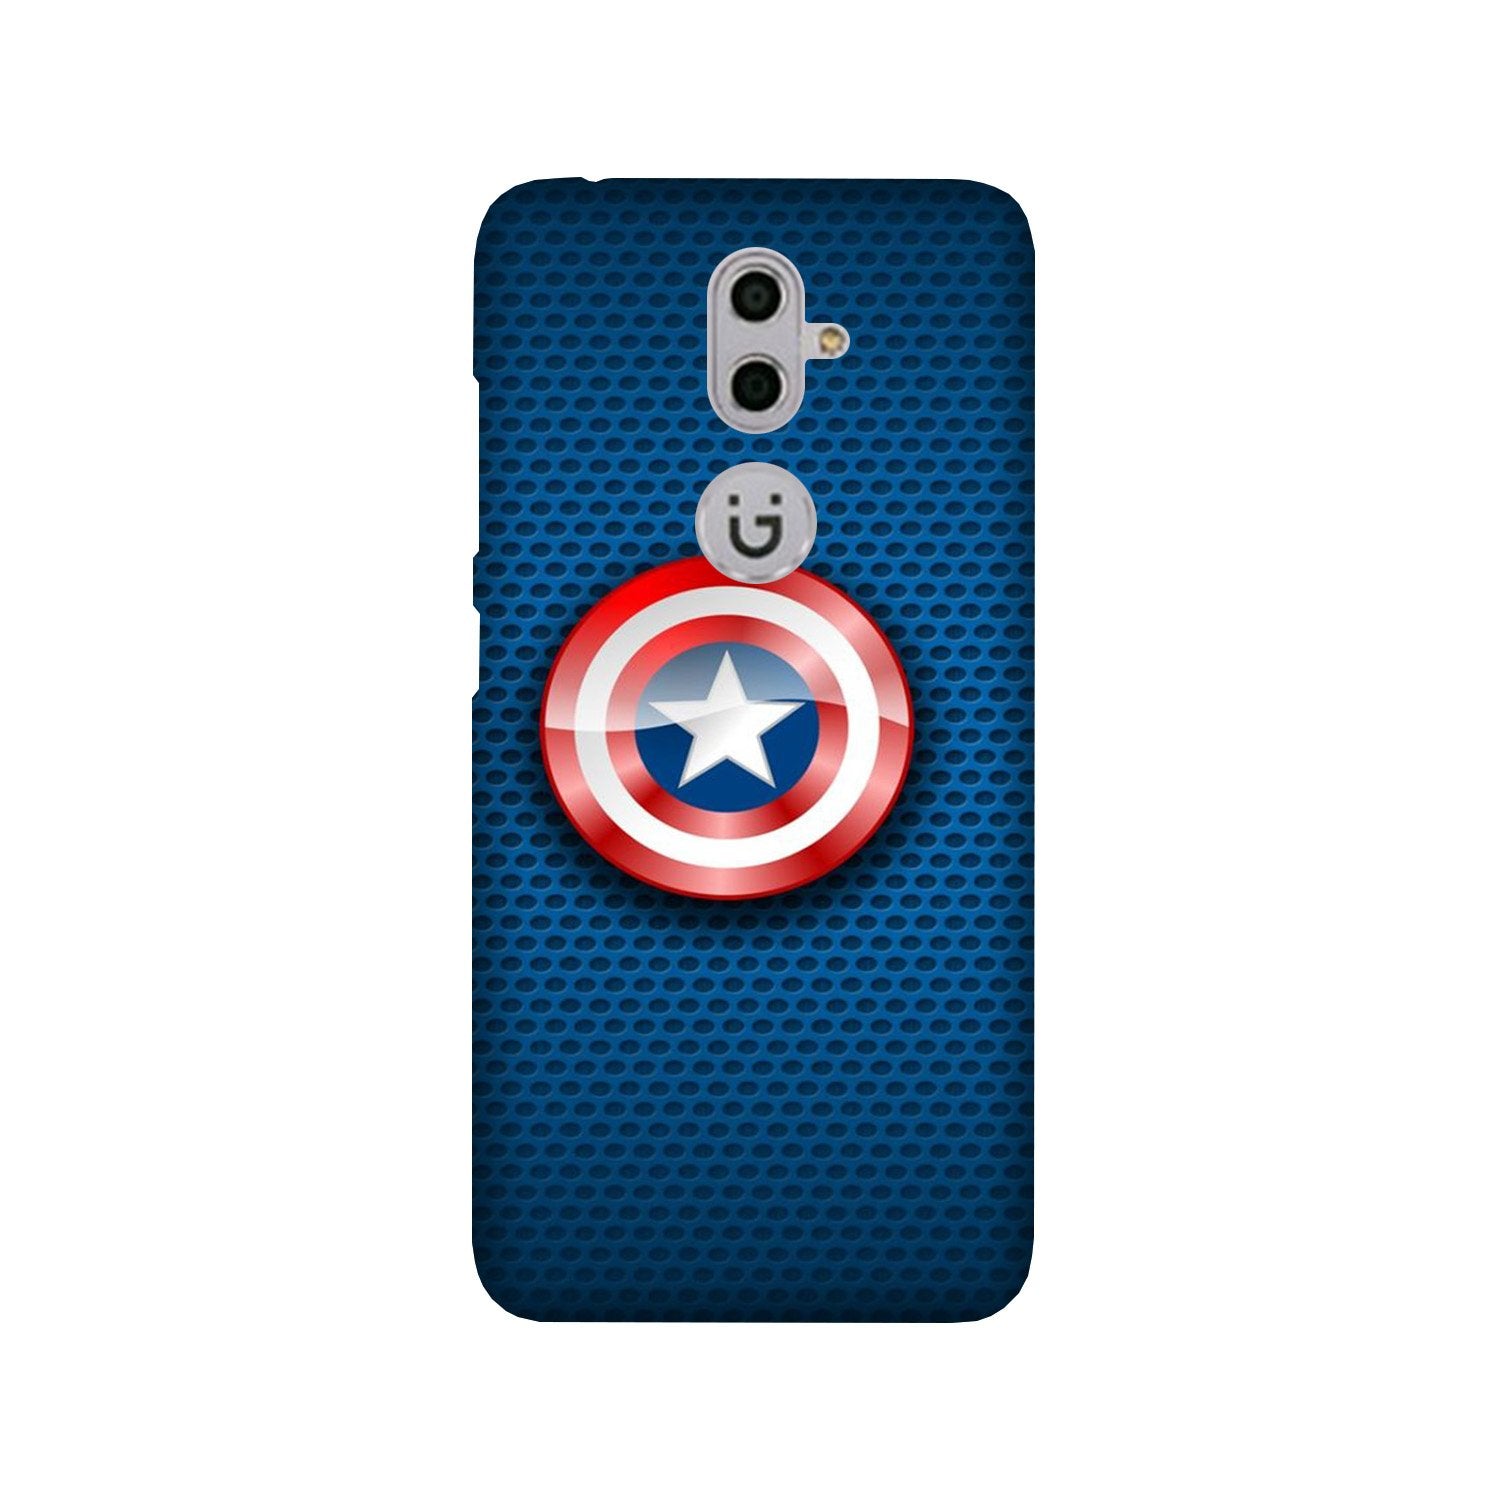 Captain America Shield Case for Gionee S9 (Design No. 253)